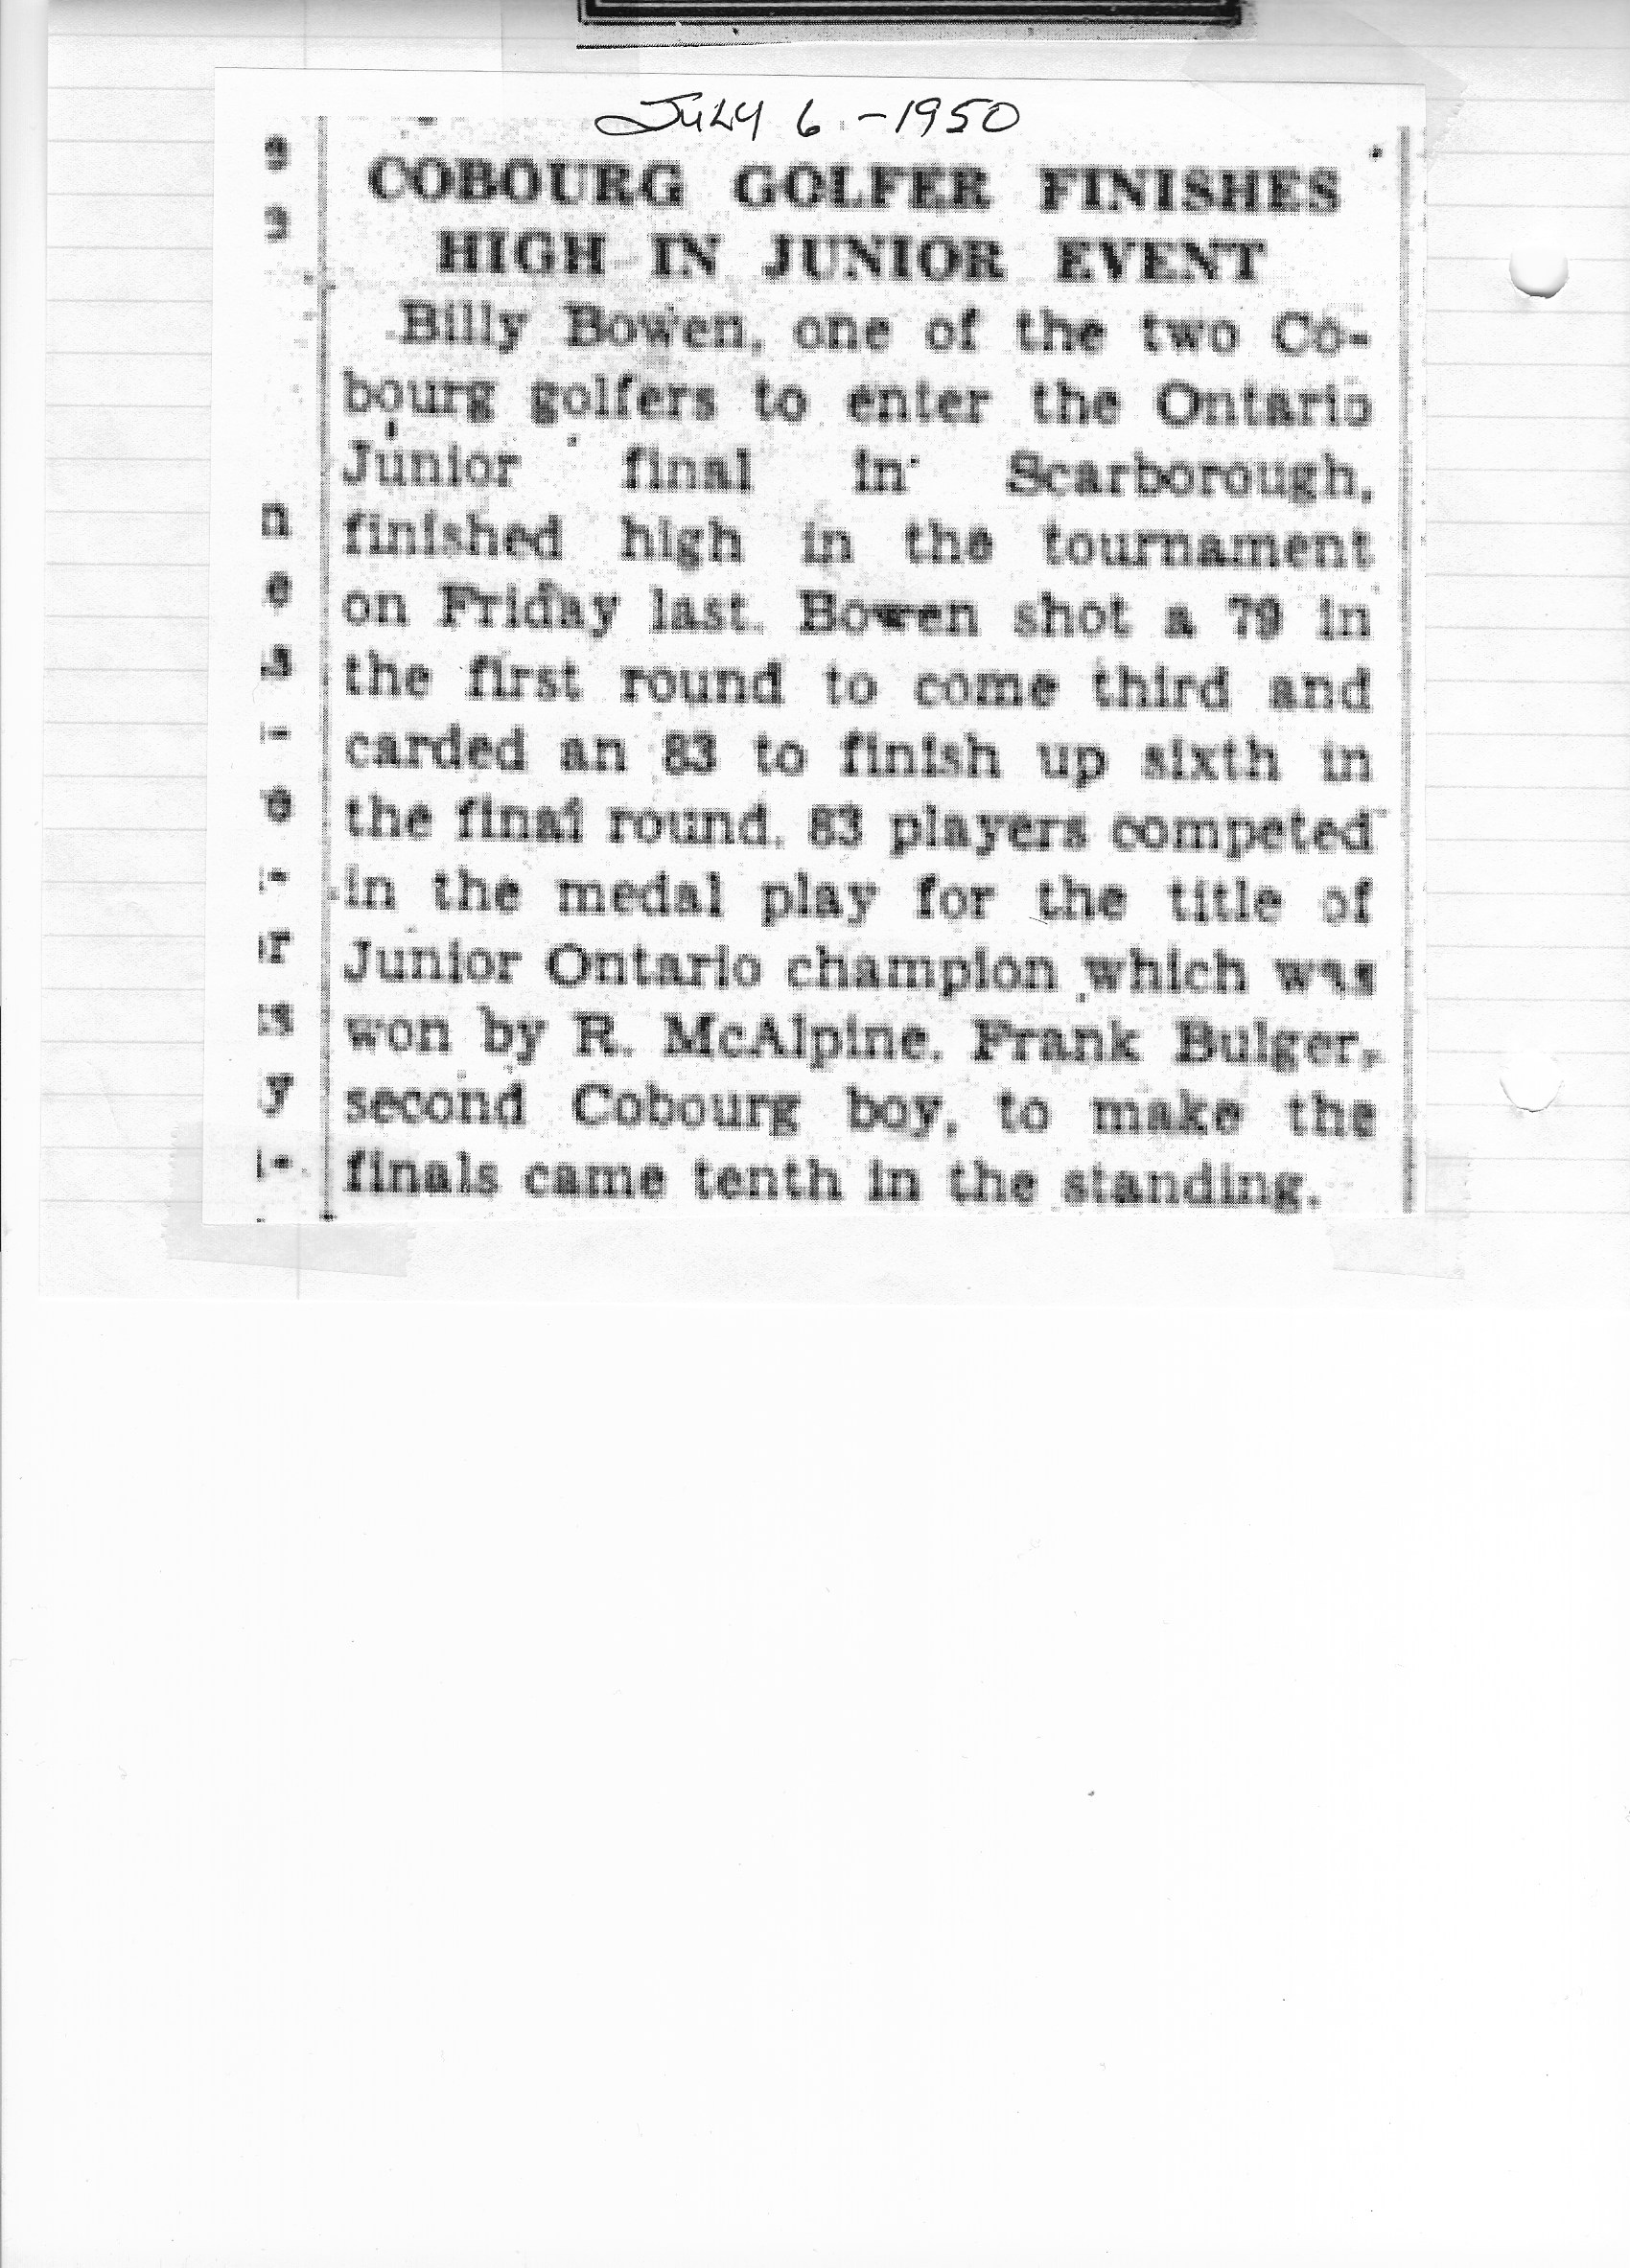 1950-07-06 Golf -Junior Ontario Event